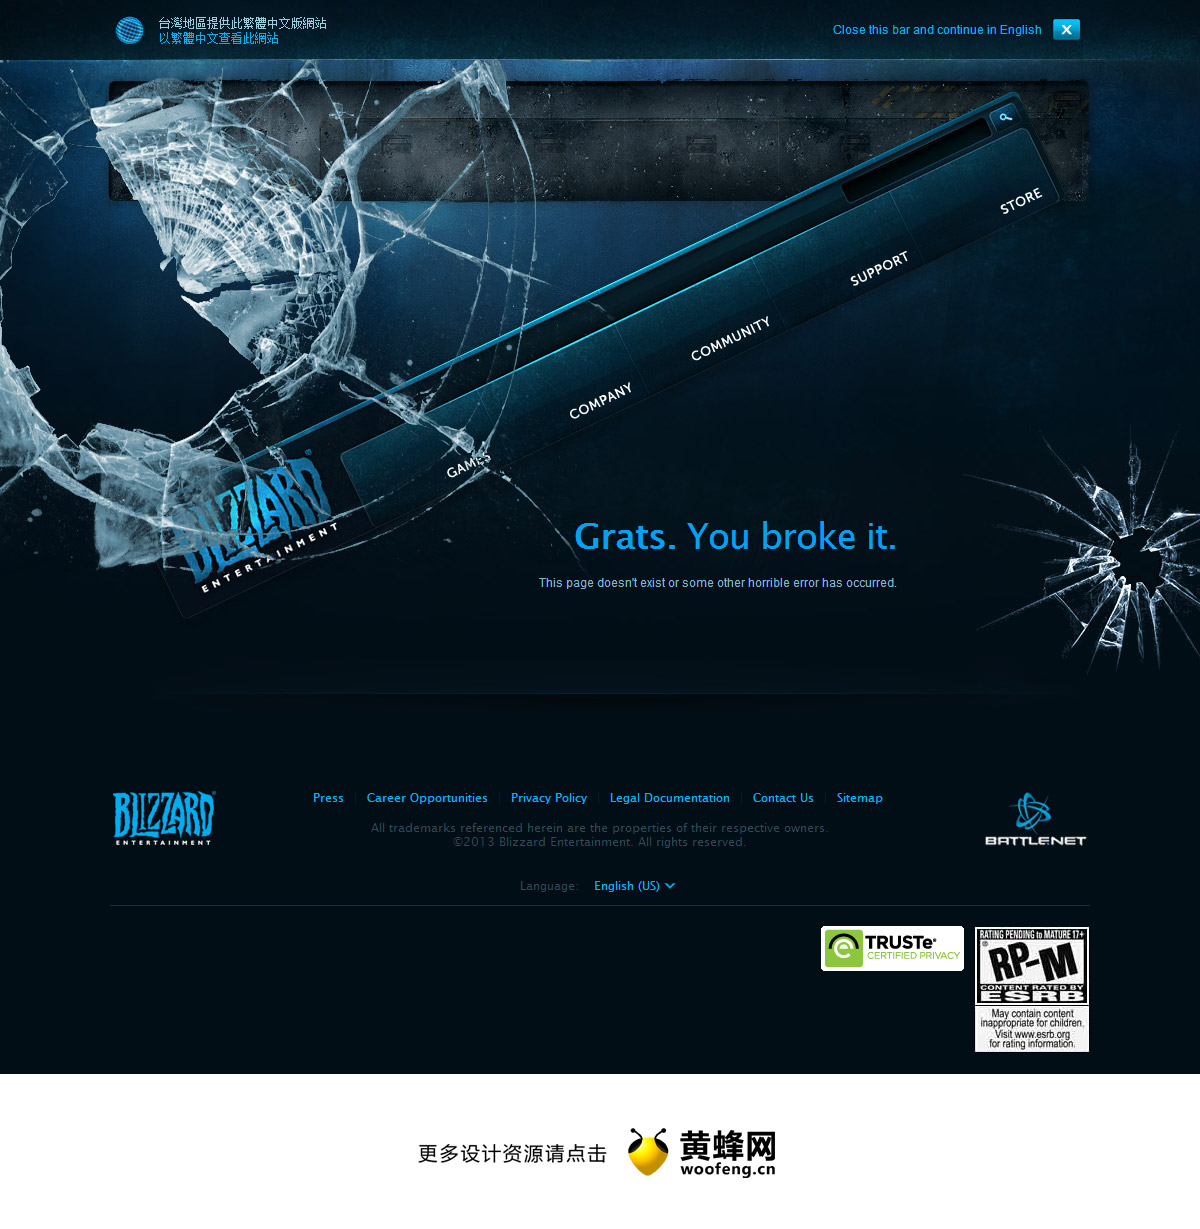 暴雪官方网站创意404页面设计，来源自黄蜂网https://woofeng.cn/webcut/